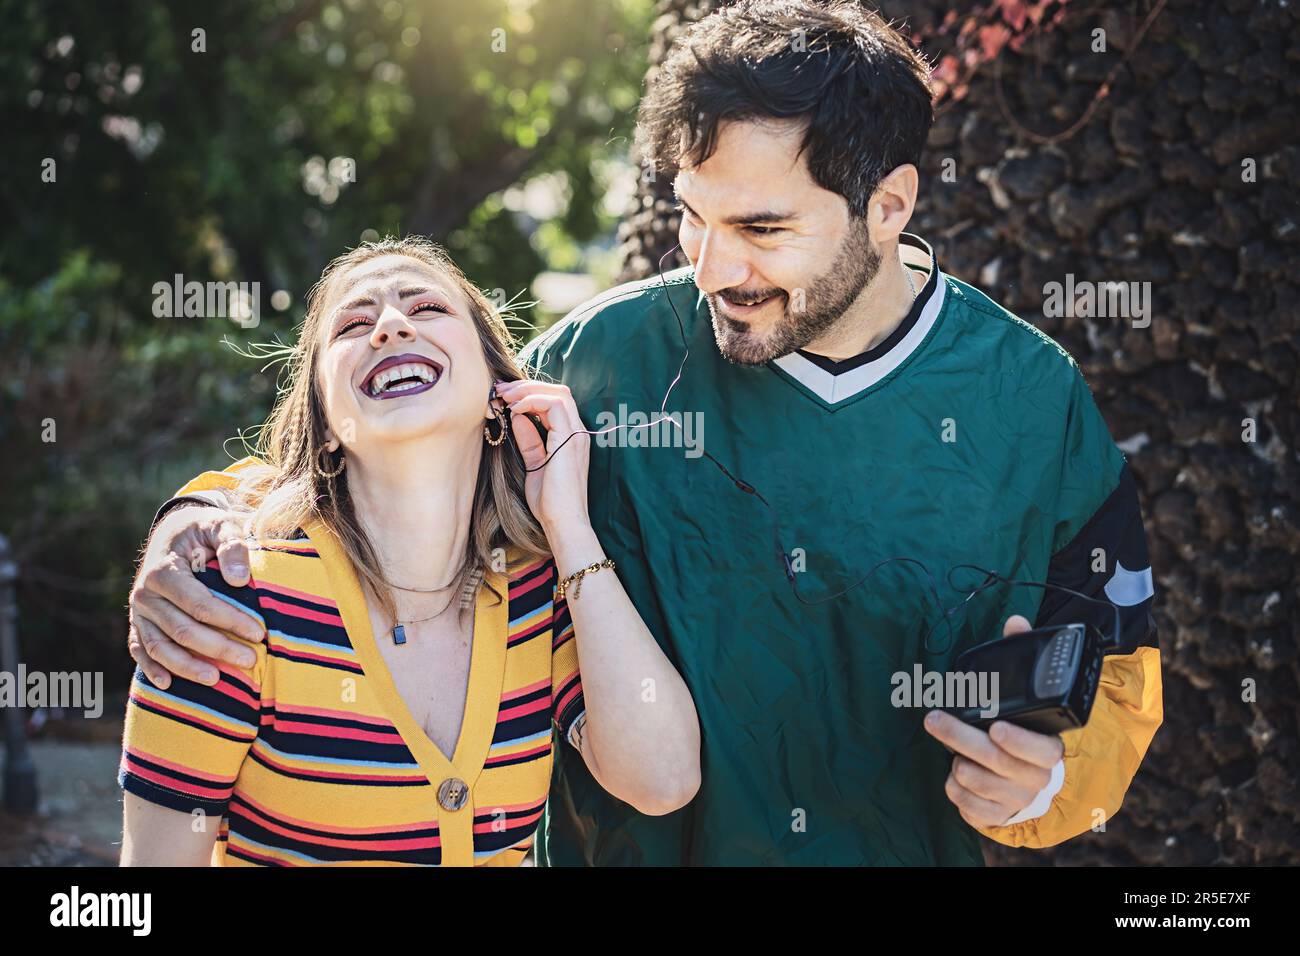 Eine ehrliche Aufnahme eines jungen Mannes und einer jungen Frau, die an einem sonnigen Tag im Park spazieren und die 90s mit einem Kassettenrekorder wiedererleben. Sie teilen sich ein Paar Ohrhörer Stockfoto